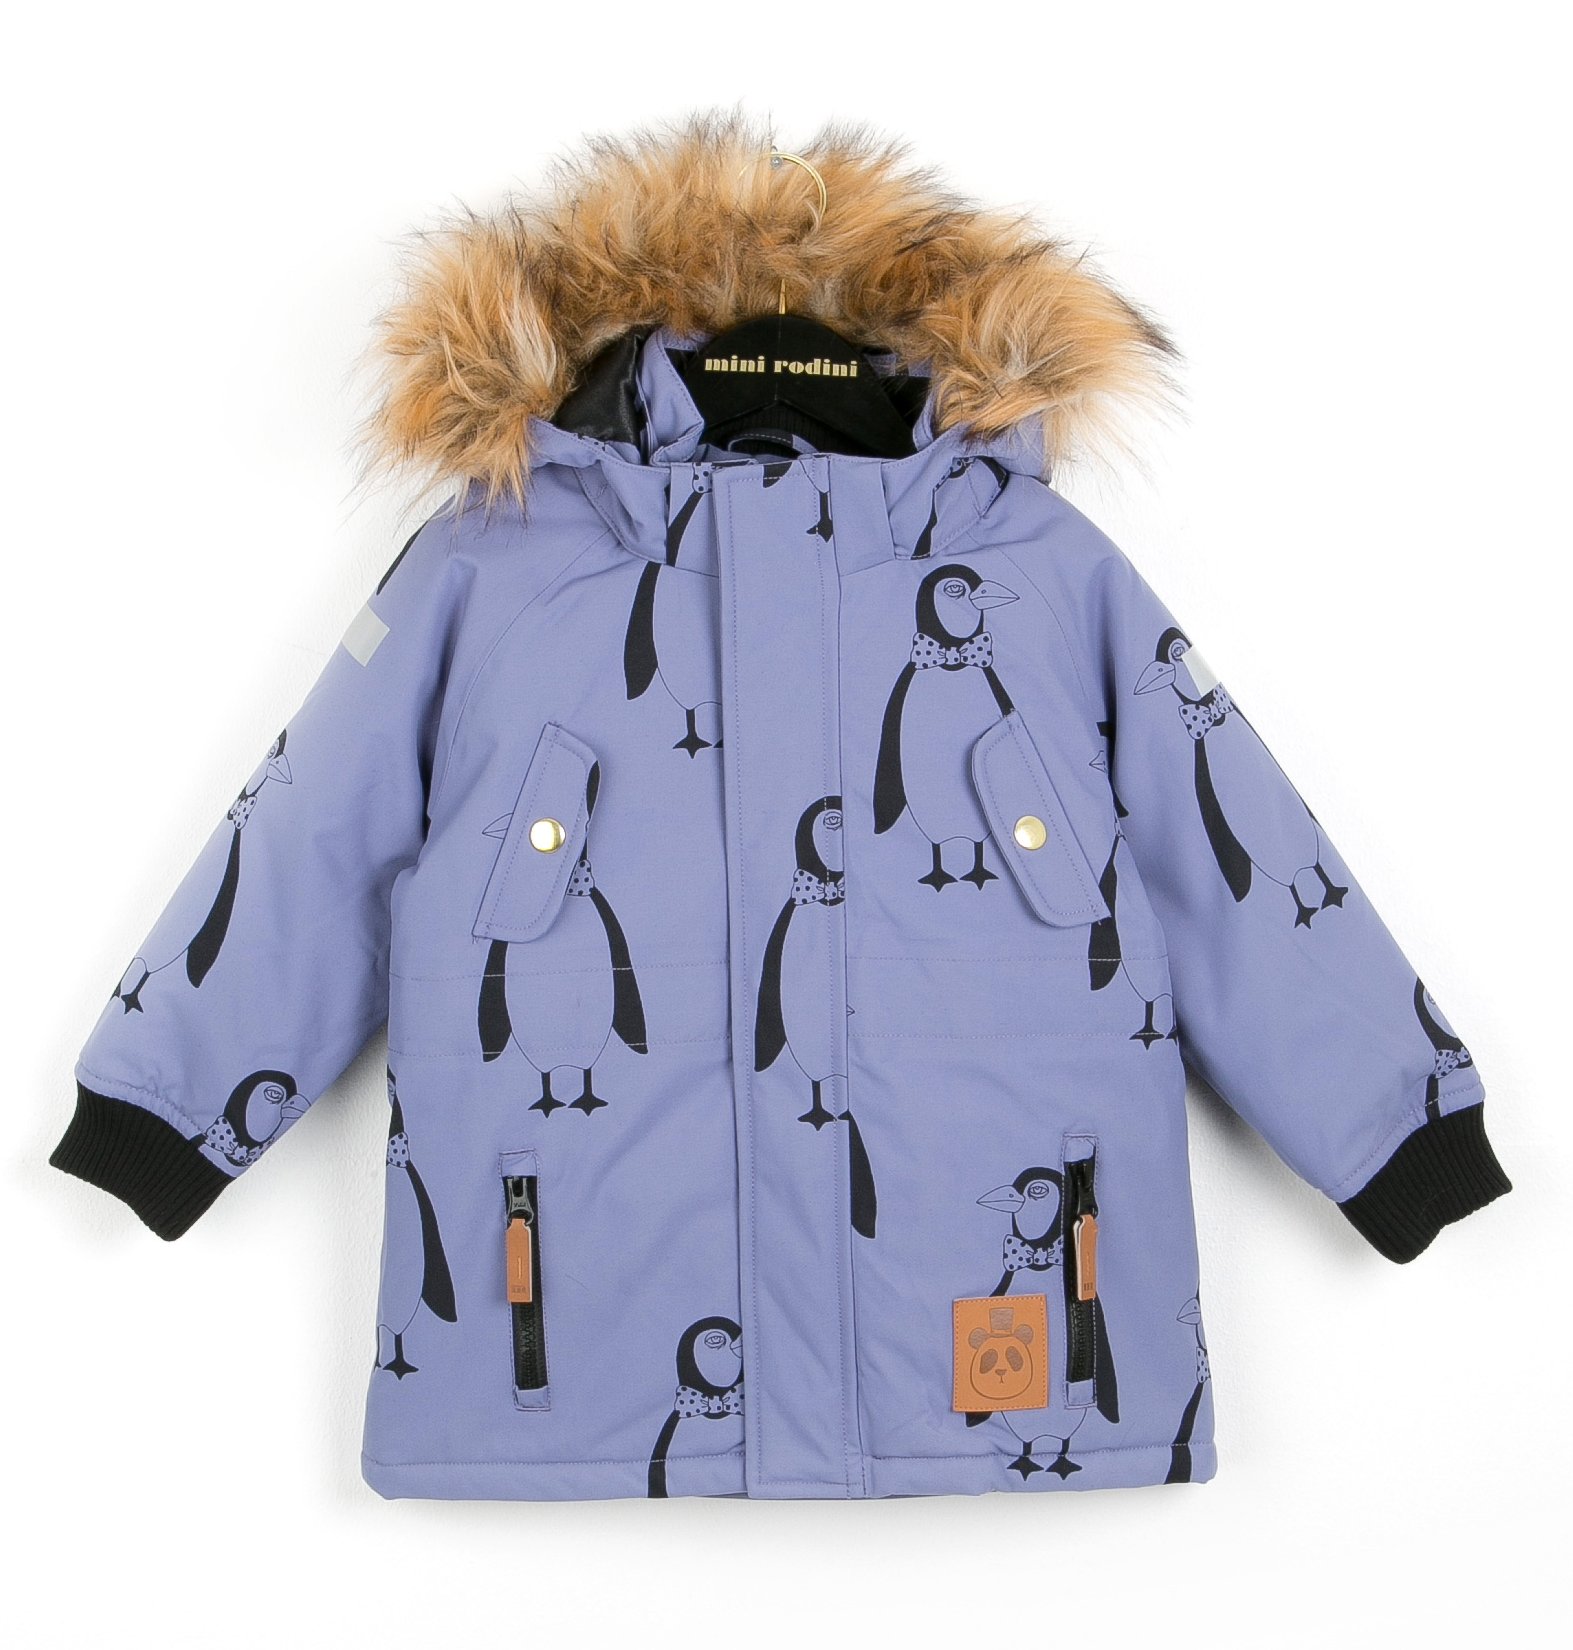 mini rodini winter coat giveaway